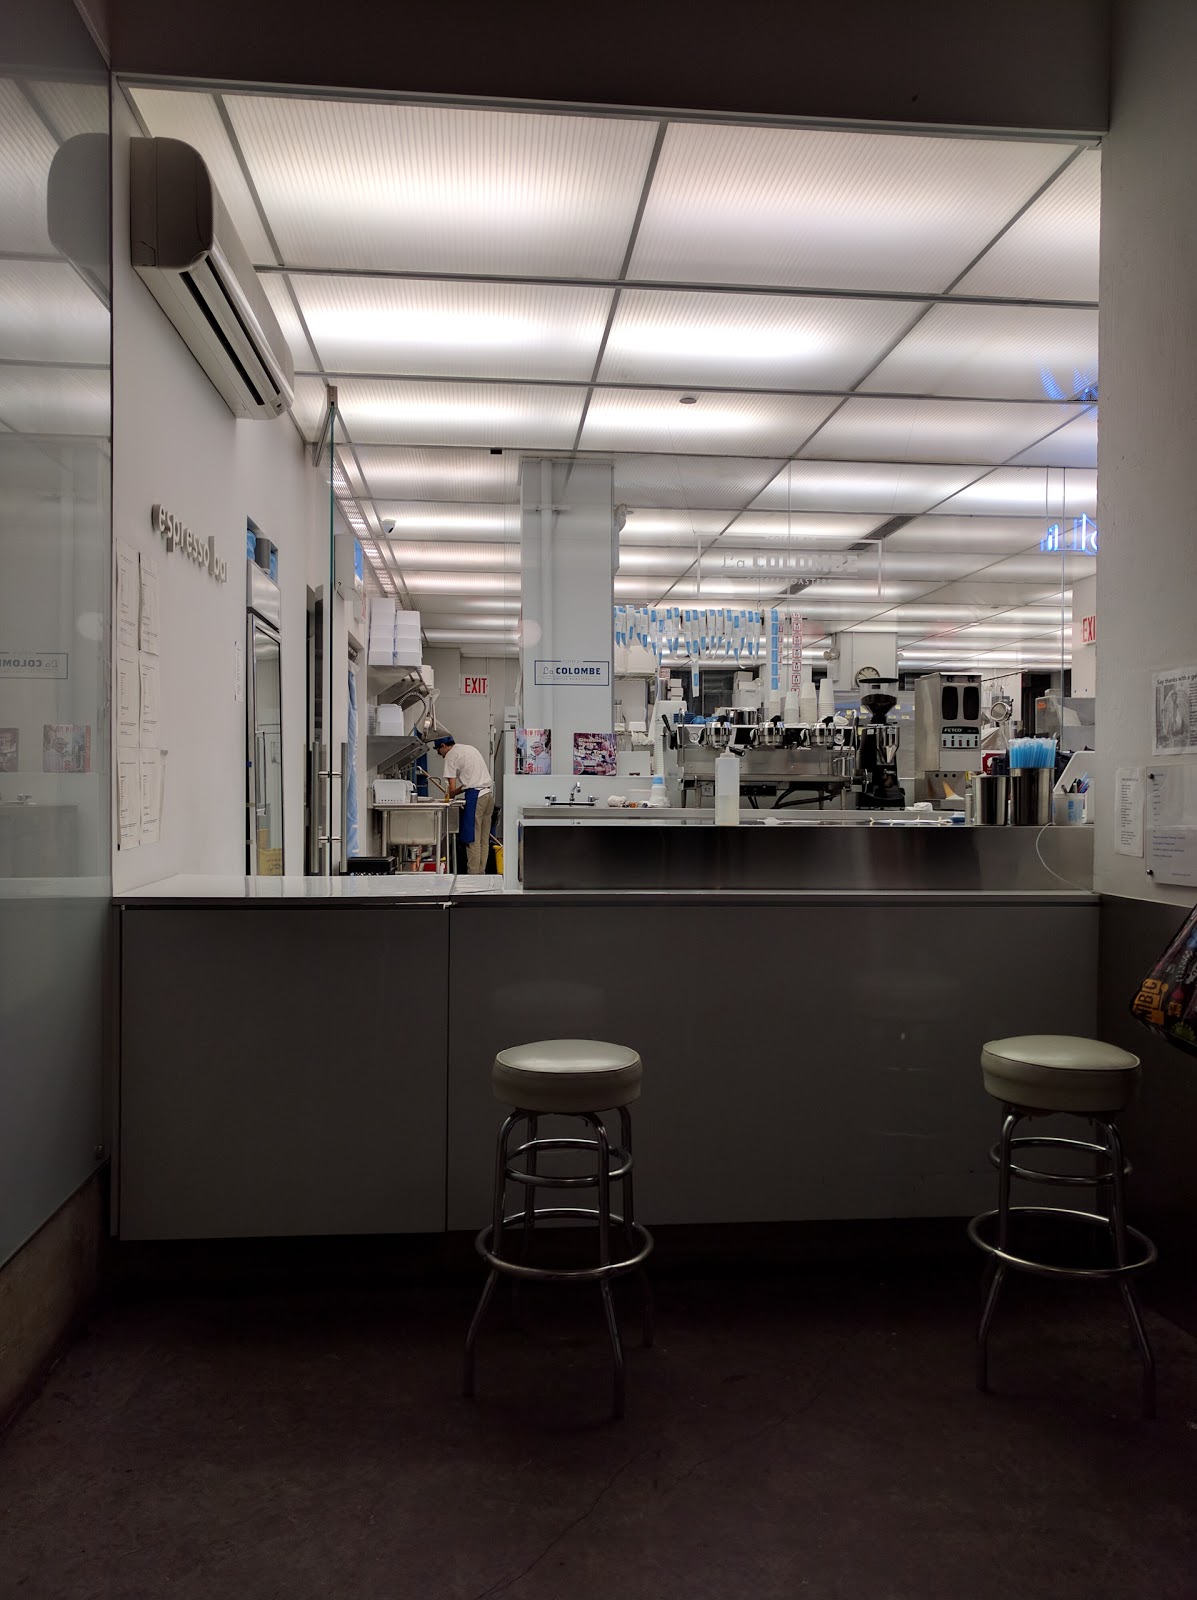 Photo of il laboratorio del gelato in New York City, New York, United States - 3 Picture of Food, Point of interest, Establishment, Store